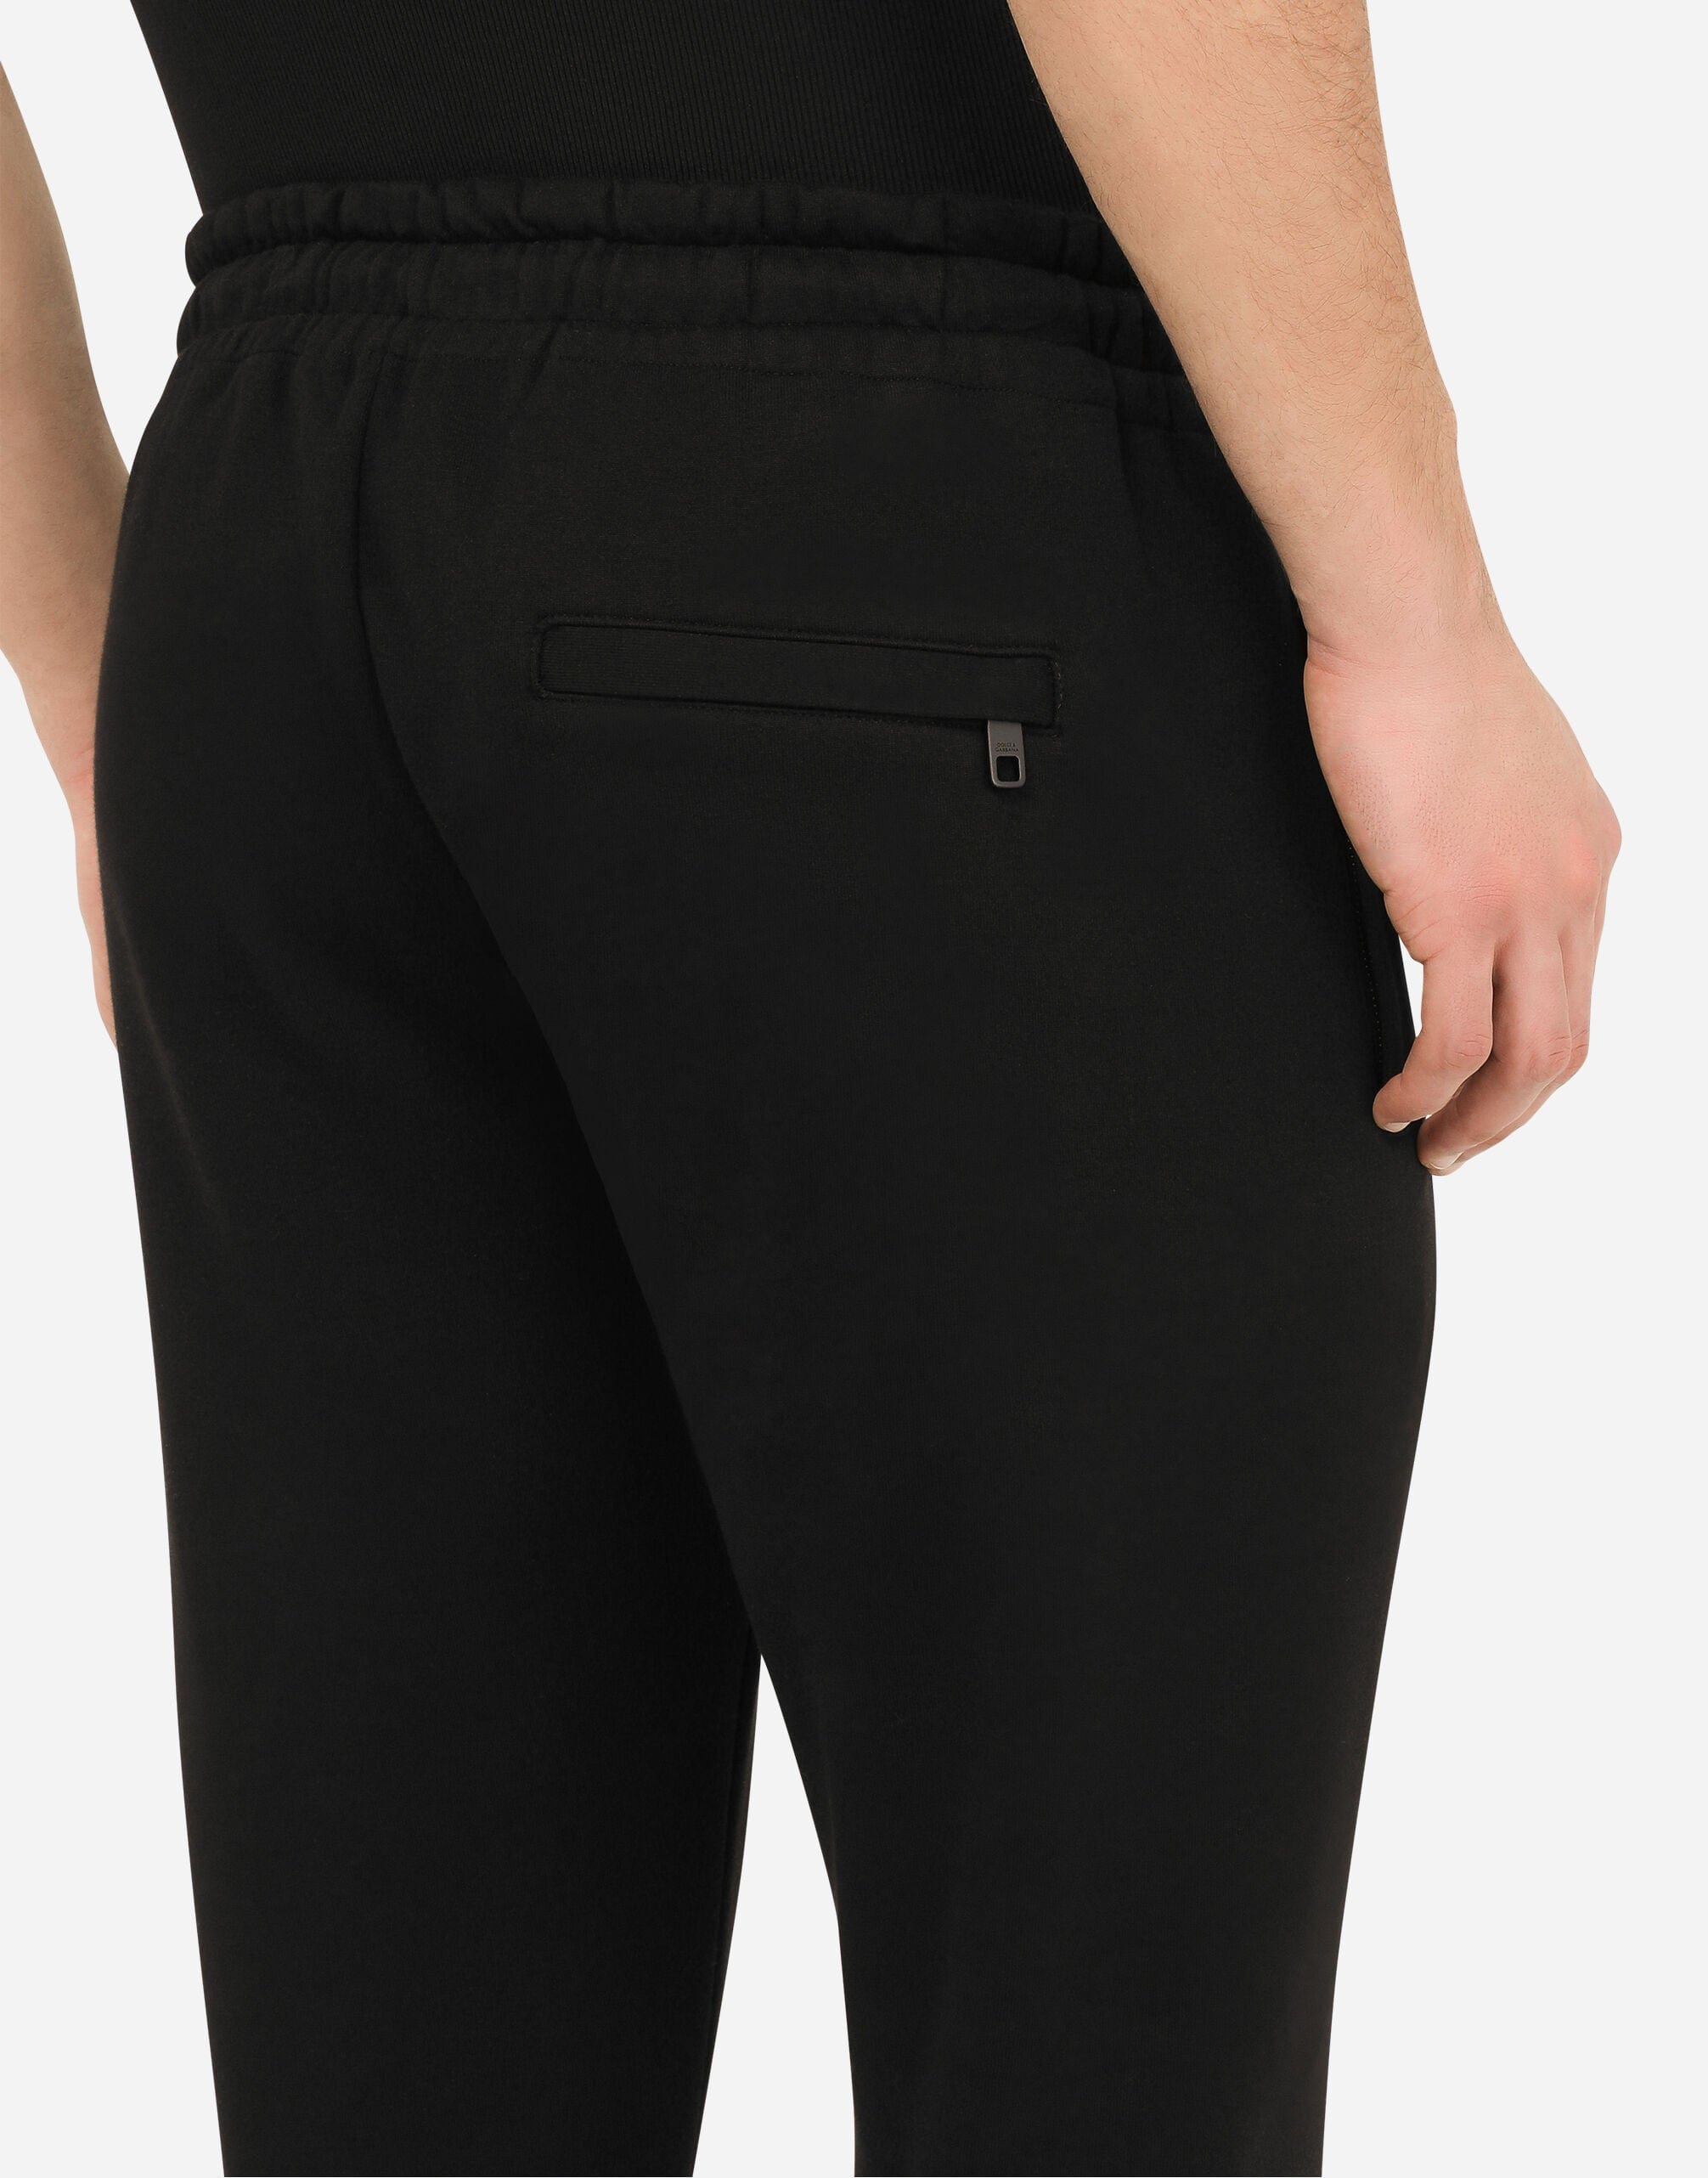 Pantalon de jogging avec patch de DG 3D caoutchouté